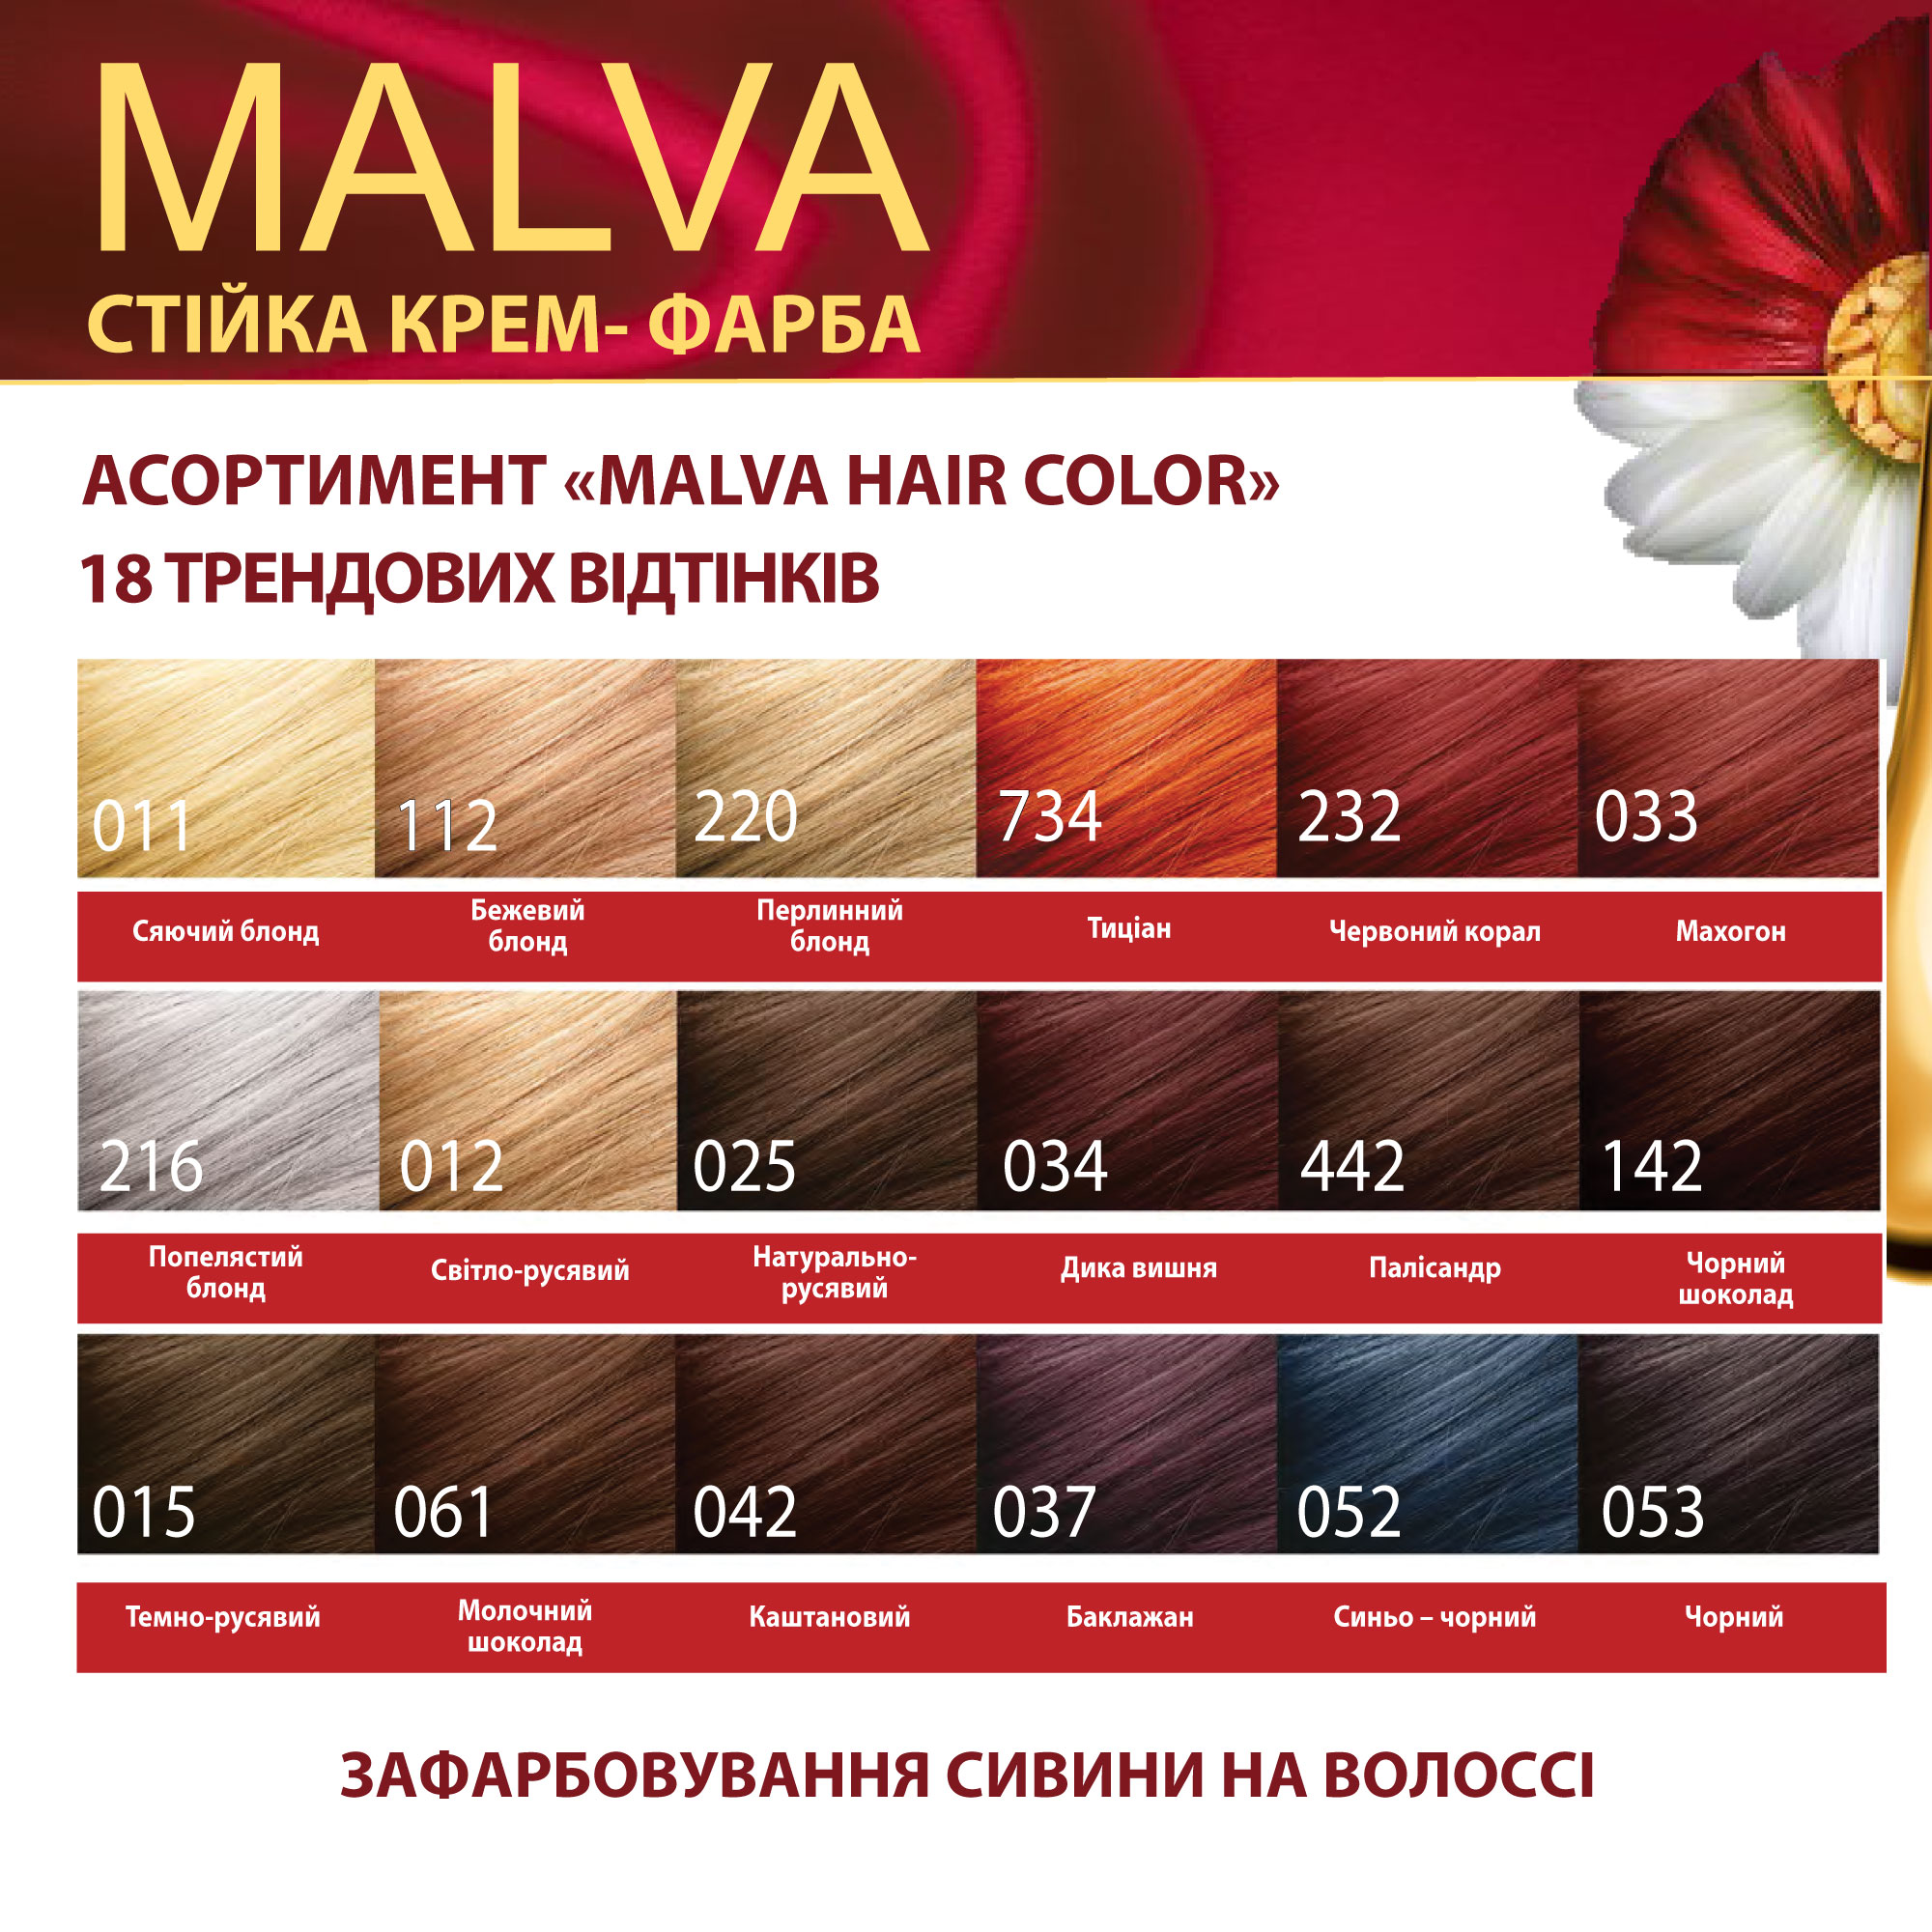 Крем-краска для волос Acme Color Malva, оттенок 061 (Молочный шоколад), 95 мл - фото 6